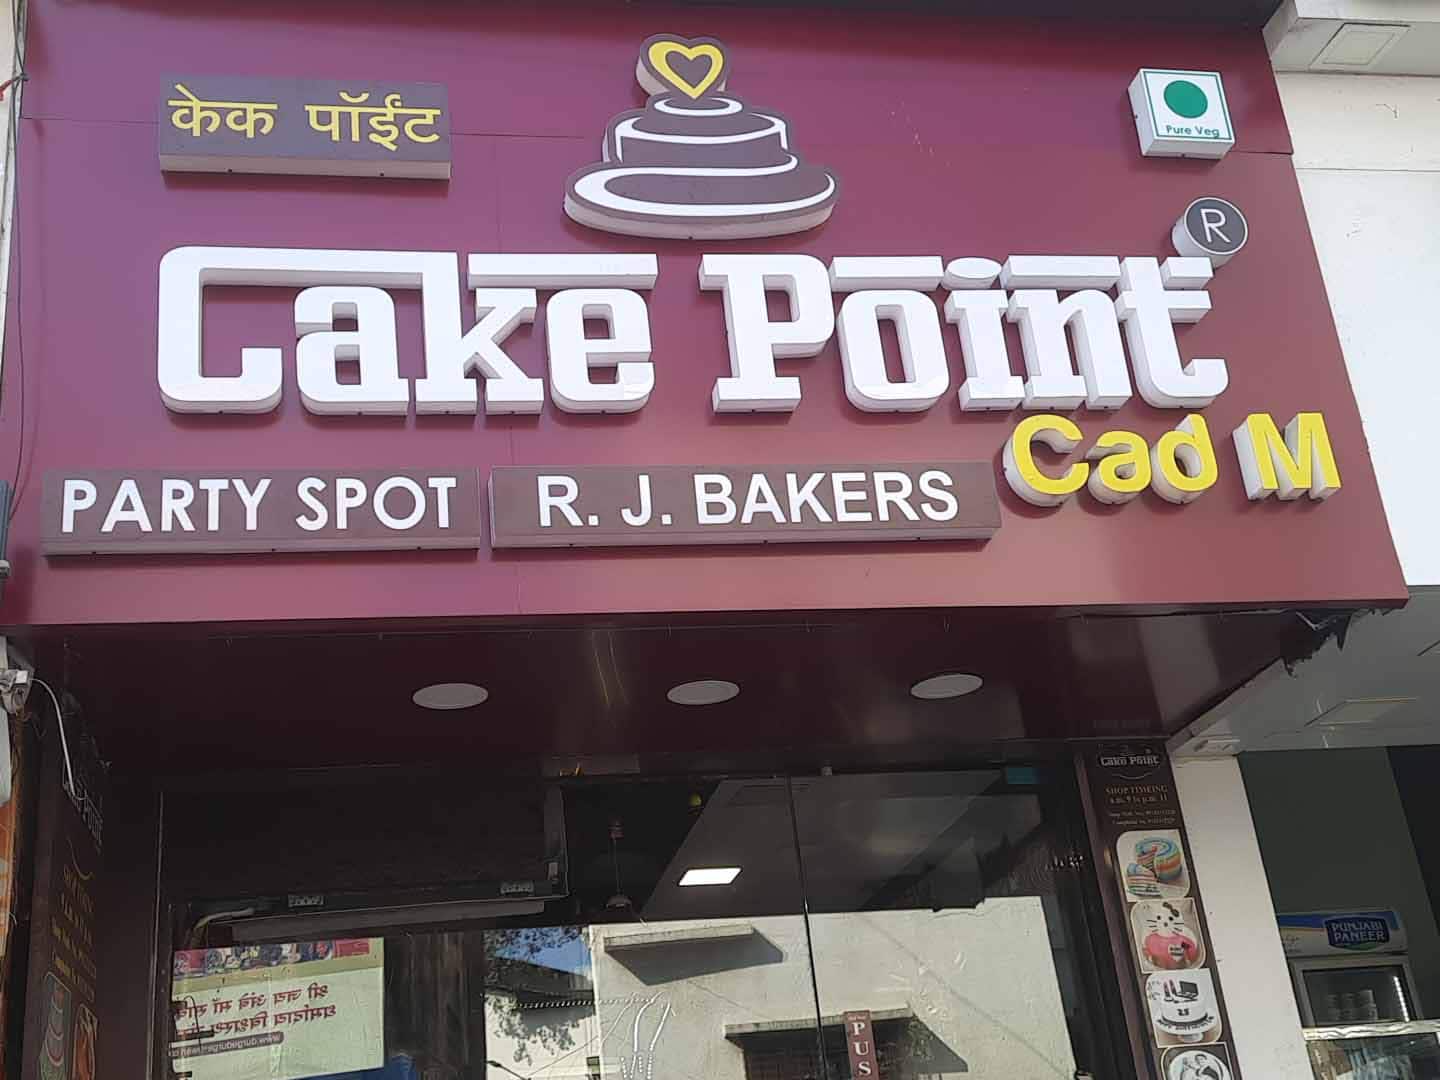 Cake Point Cad M - Bakery - Thane - Maharashtra | Yappe.in